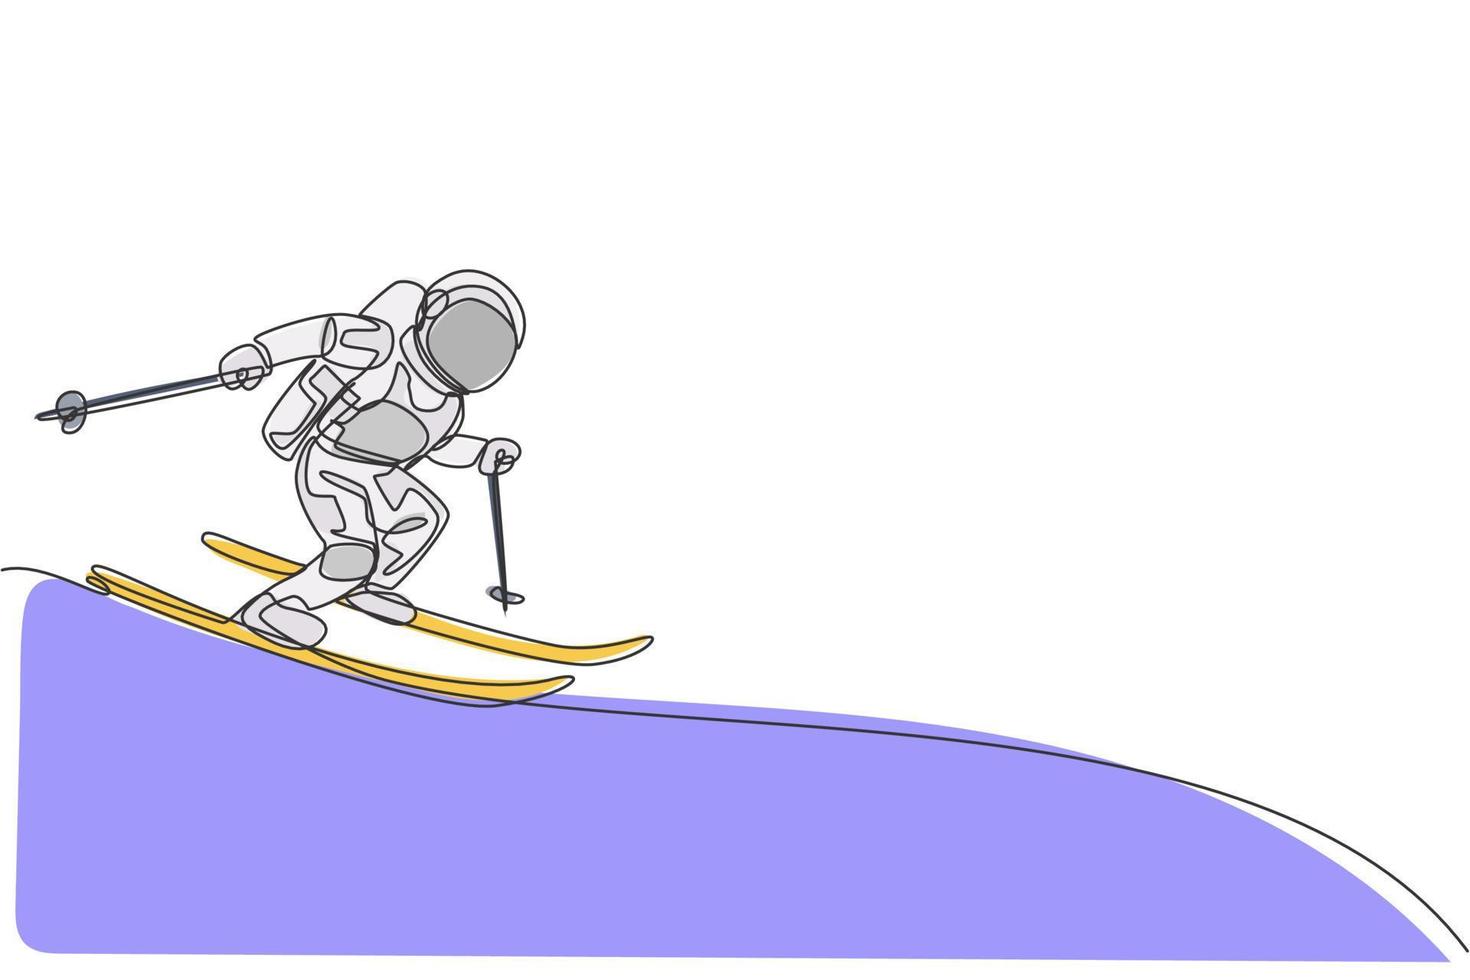 en kontinuerlig linjeteckning av astronaut som åker skidor i djupt rymdgalax. spaceman hälsosam fitness sport koncept. dynamisk enkel linje rita design vektor grafisk illustration